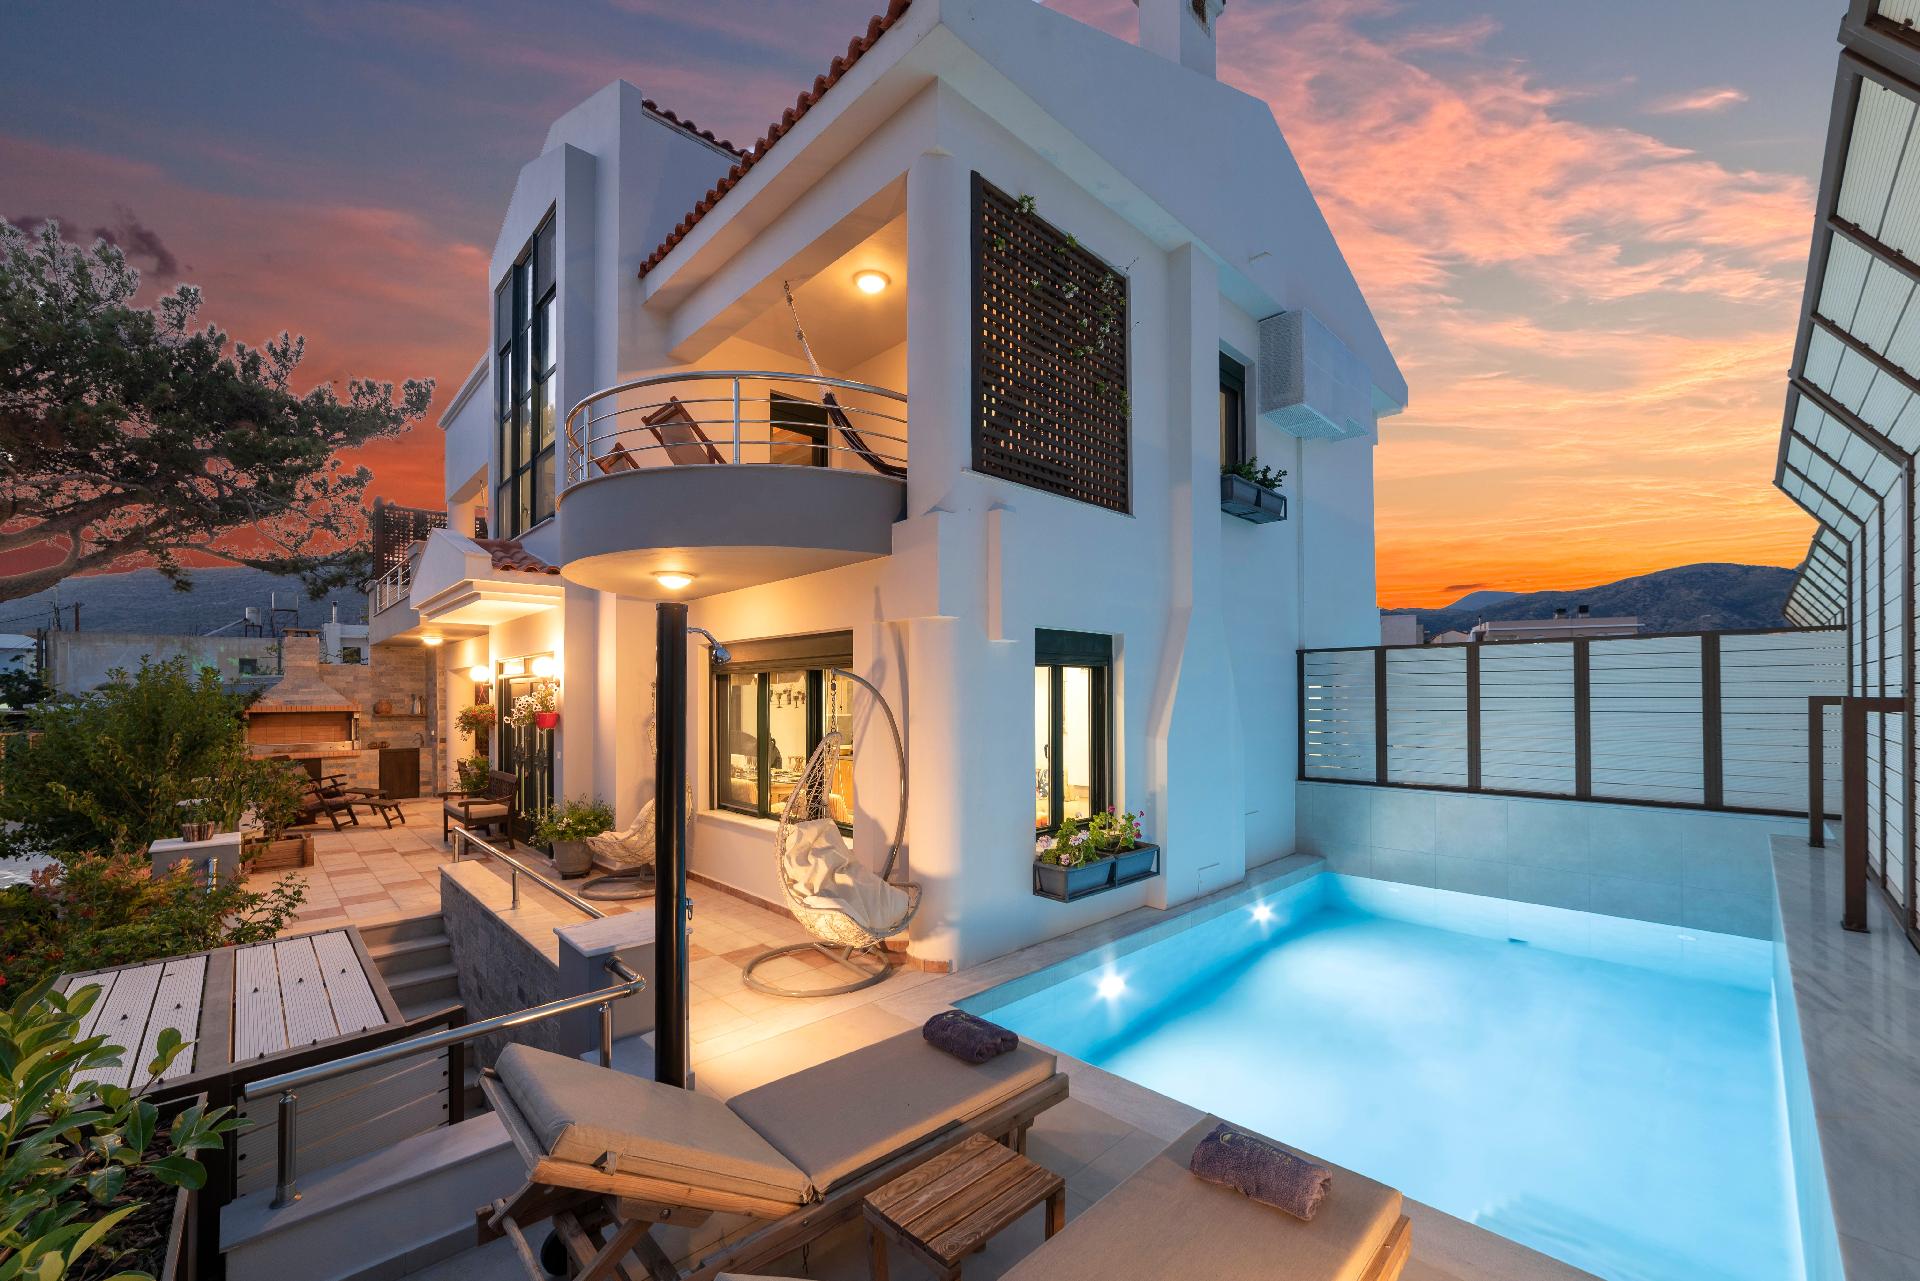 Ferienhaus mit Privatpool für 8 Personen  + 6 Ferienhaus in Griechenland